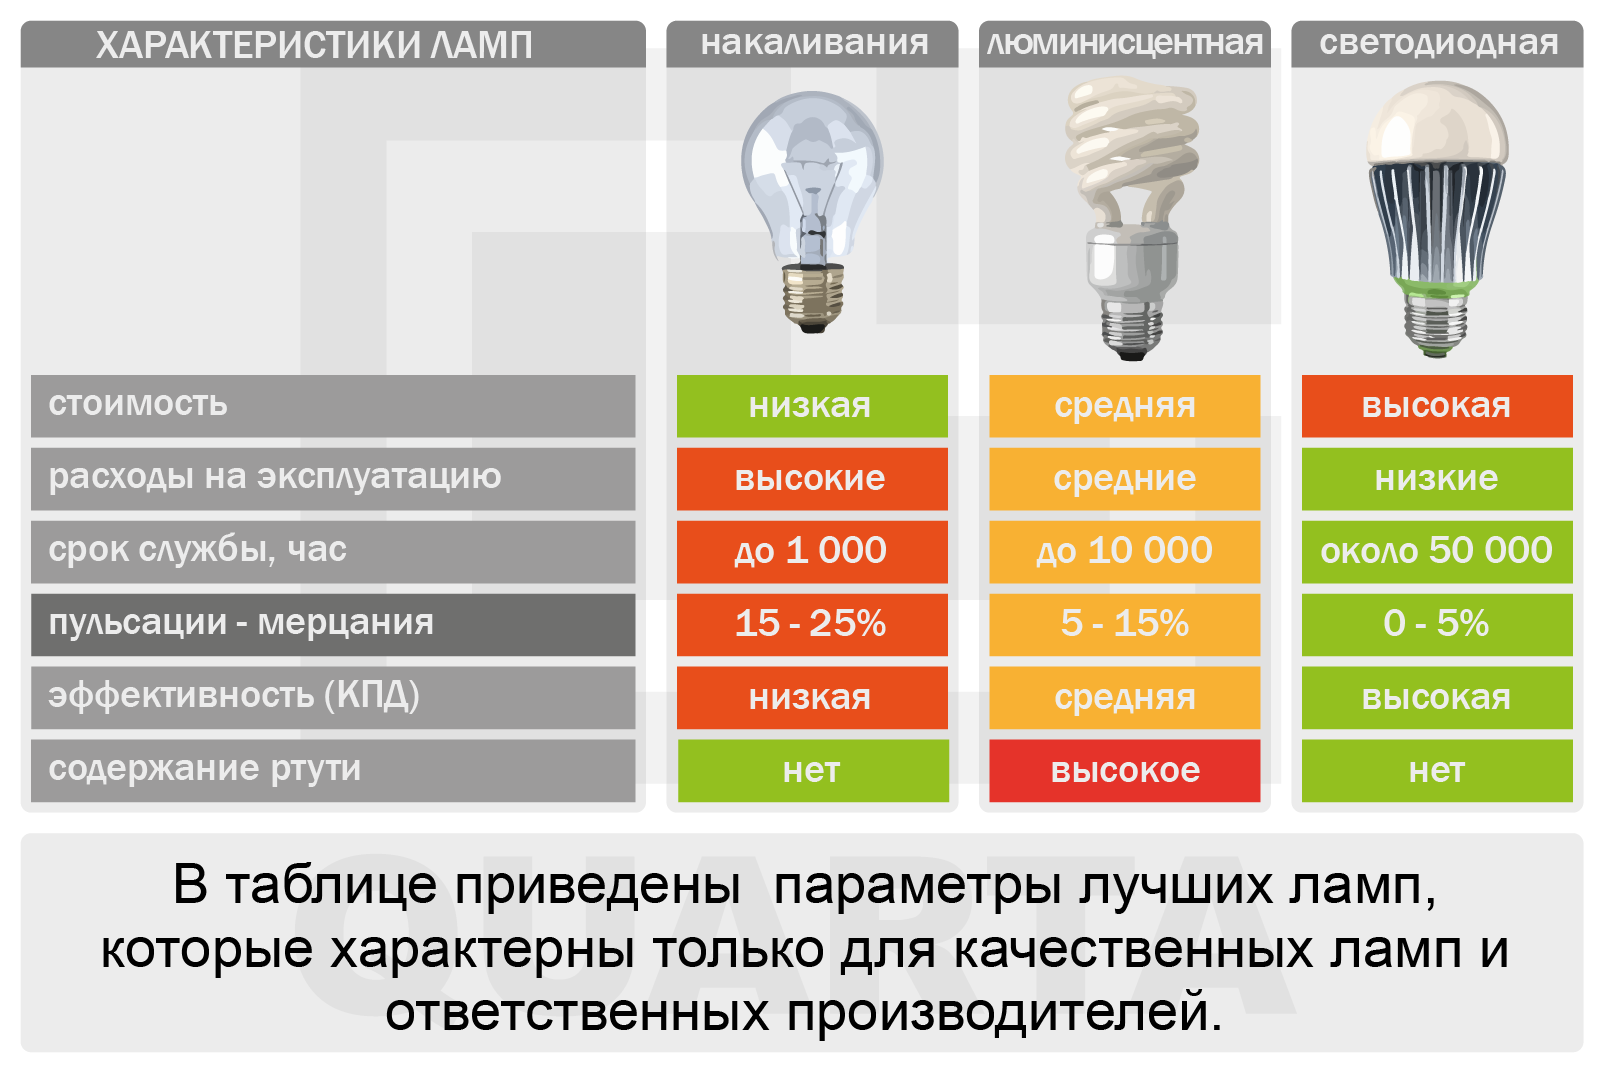 Срок службы 2025. Светодиодная лампа 40 ватт эквивалент лампы накаливания. Светодиодная лампа 18w эквивалент лампы накаливания. Таблица мощности ламп накаливания и светодиодных. 11 Вт светодиодная лампа эквивалент лампе накаливания.